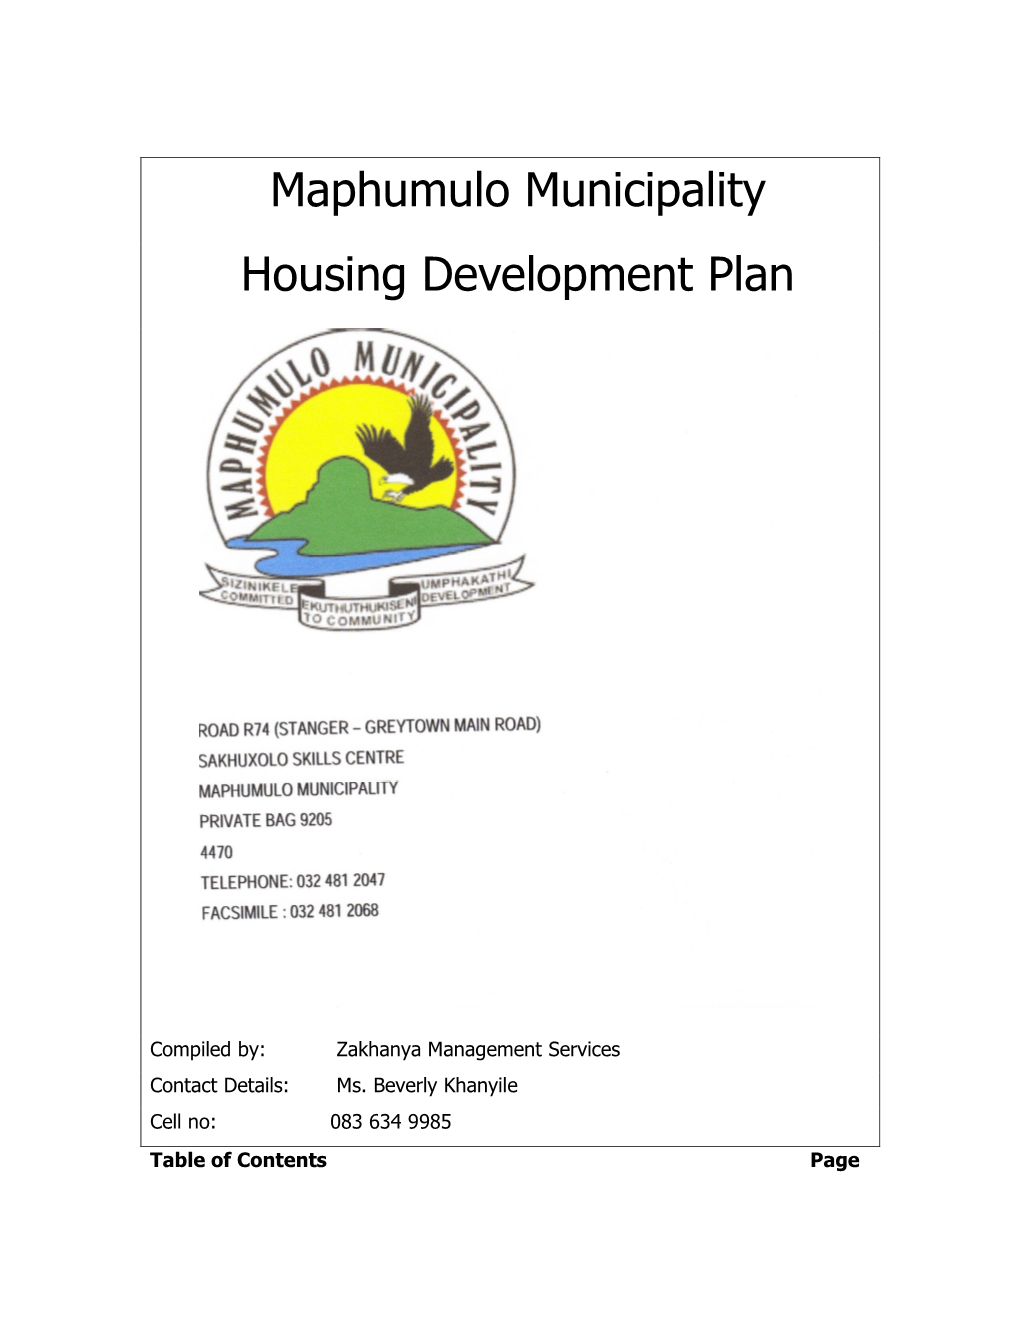 Maphumulo Municipality Housing Development Plan